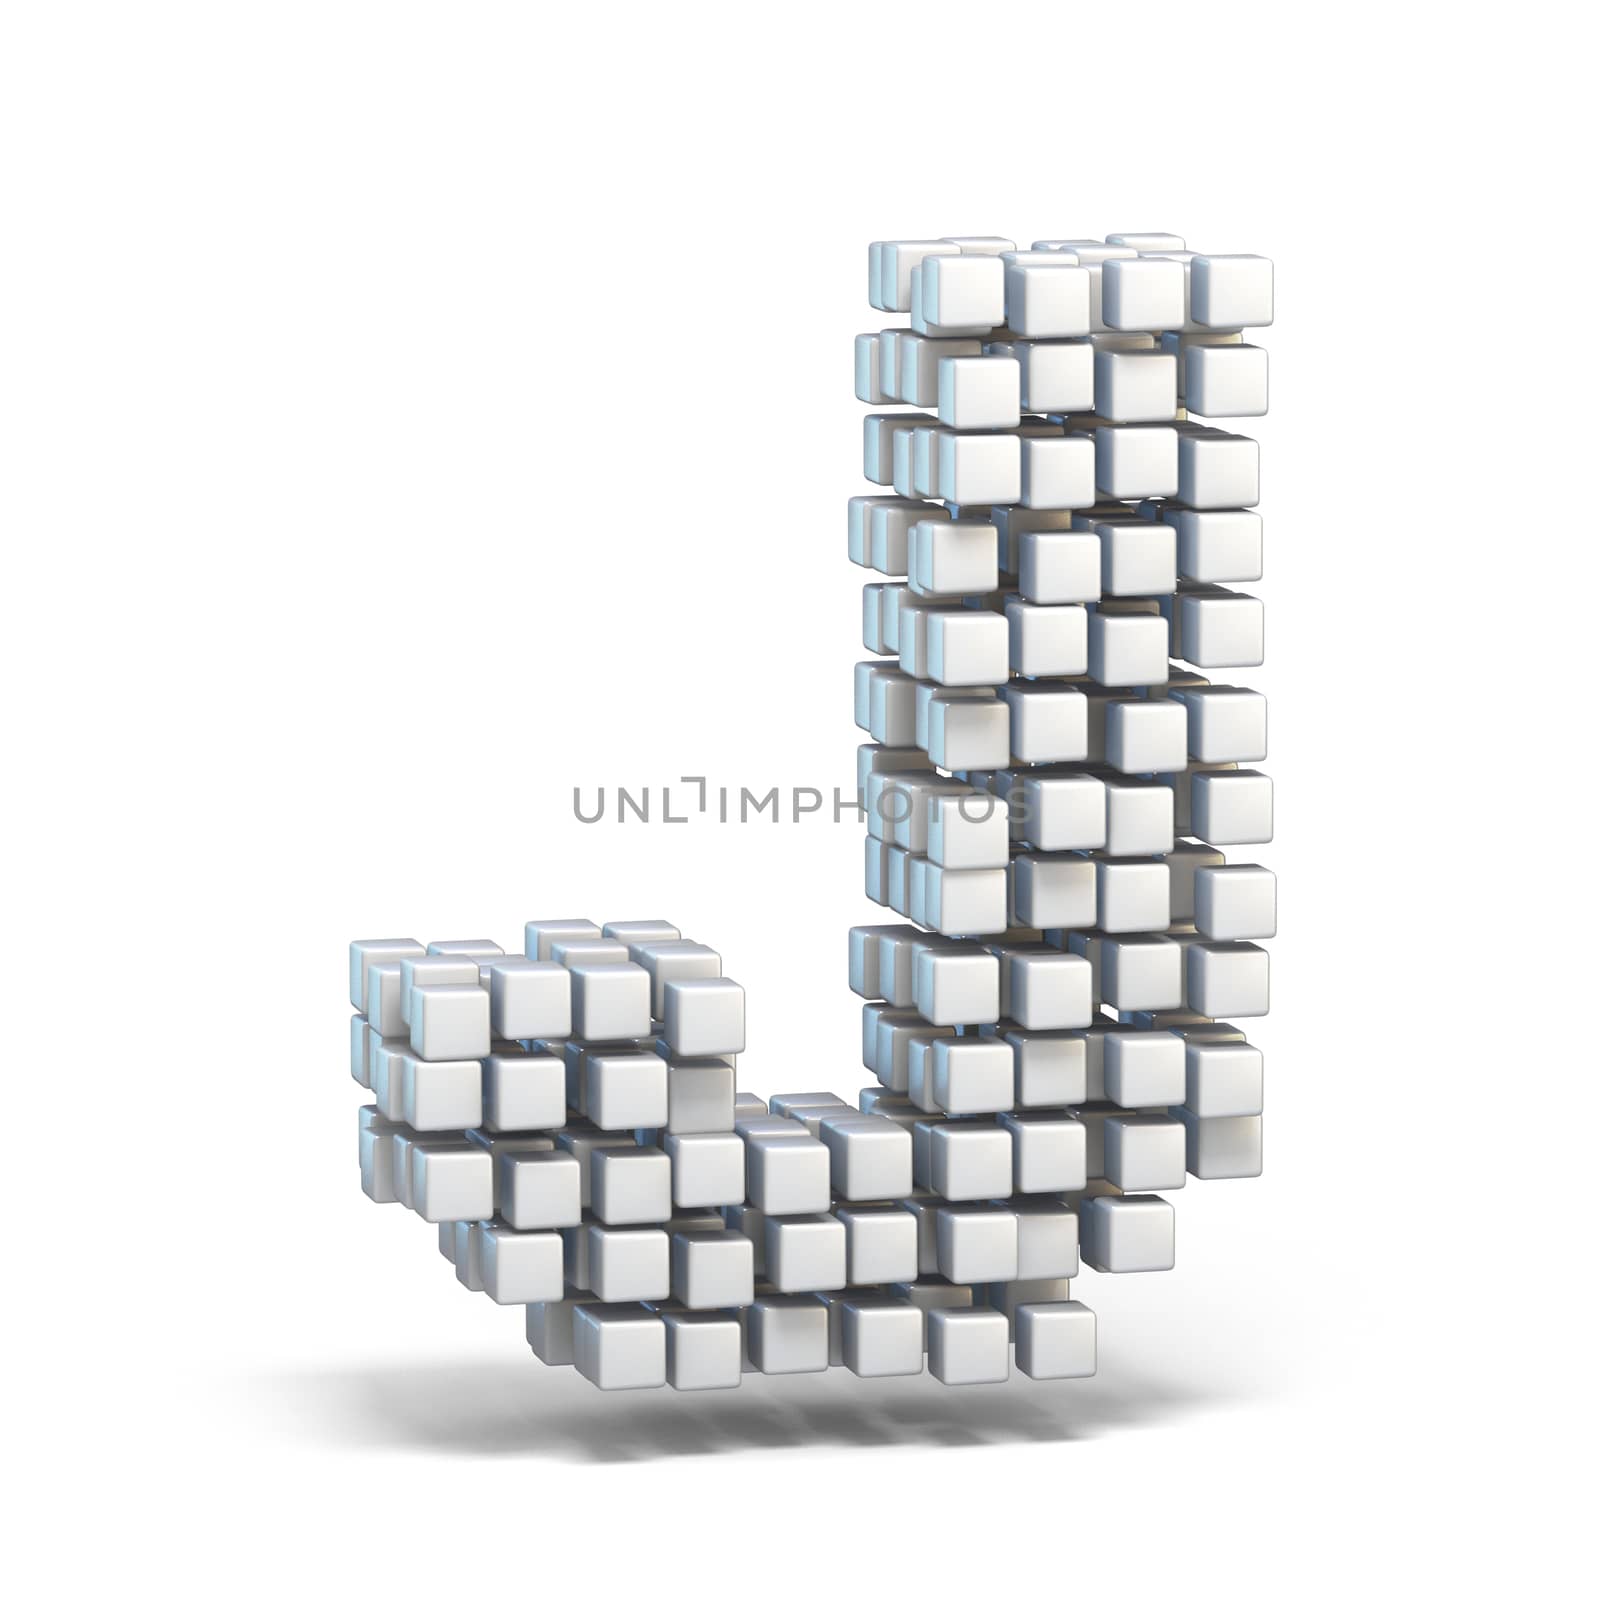 White voxel cubes font Letter J 3D render illustration isolated on white background